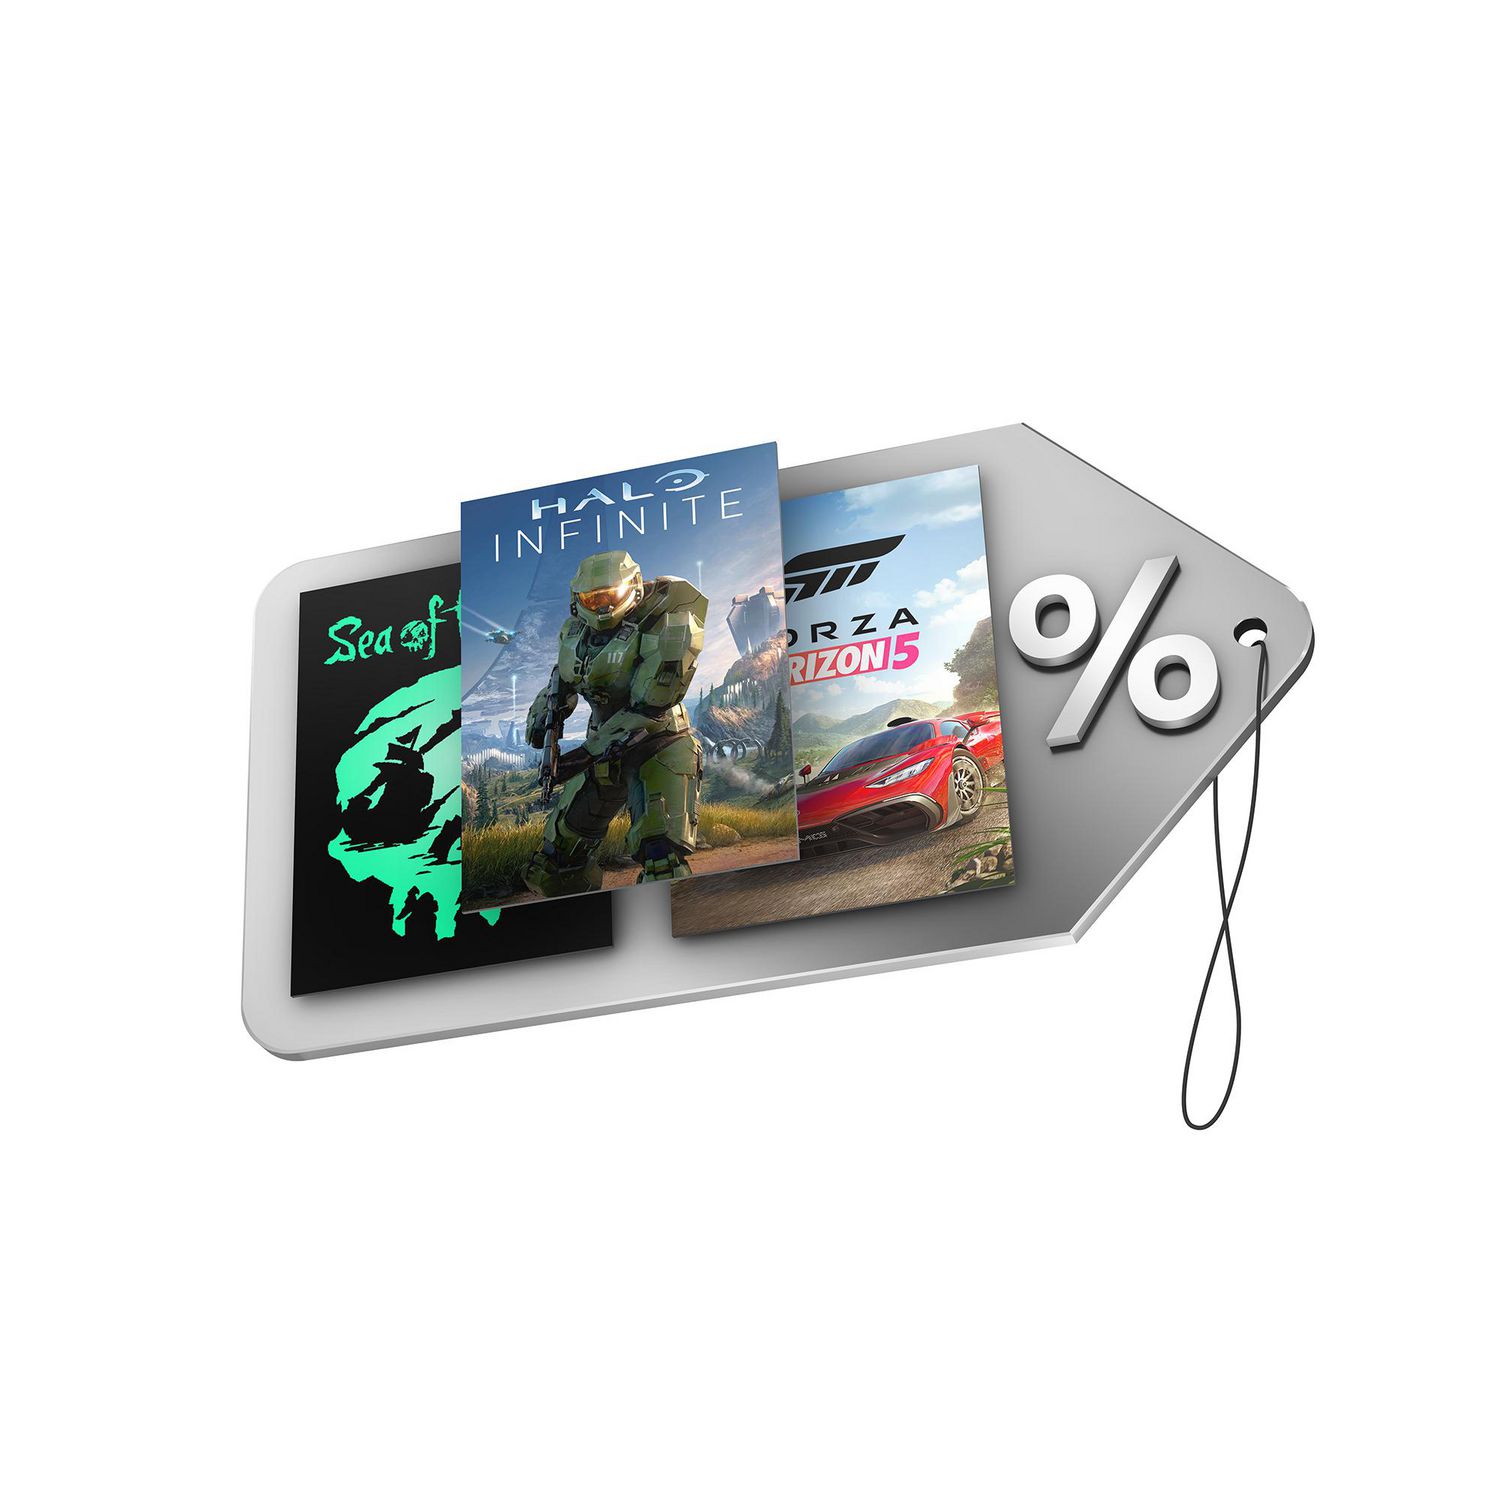 Xbox Game Pass Ultimate - 3 Months $49.99 Carte-Cadeau (Code Numérique) 